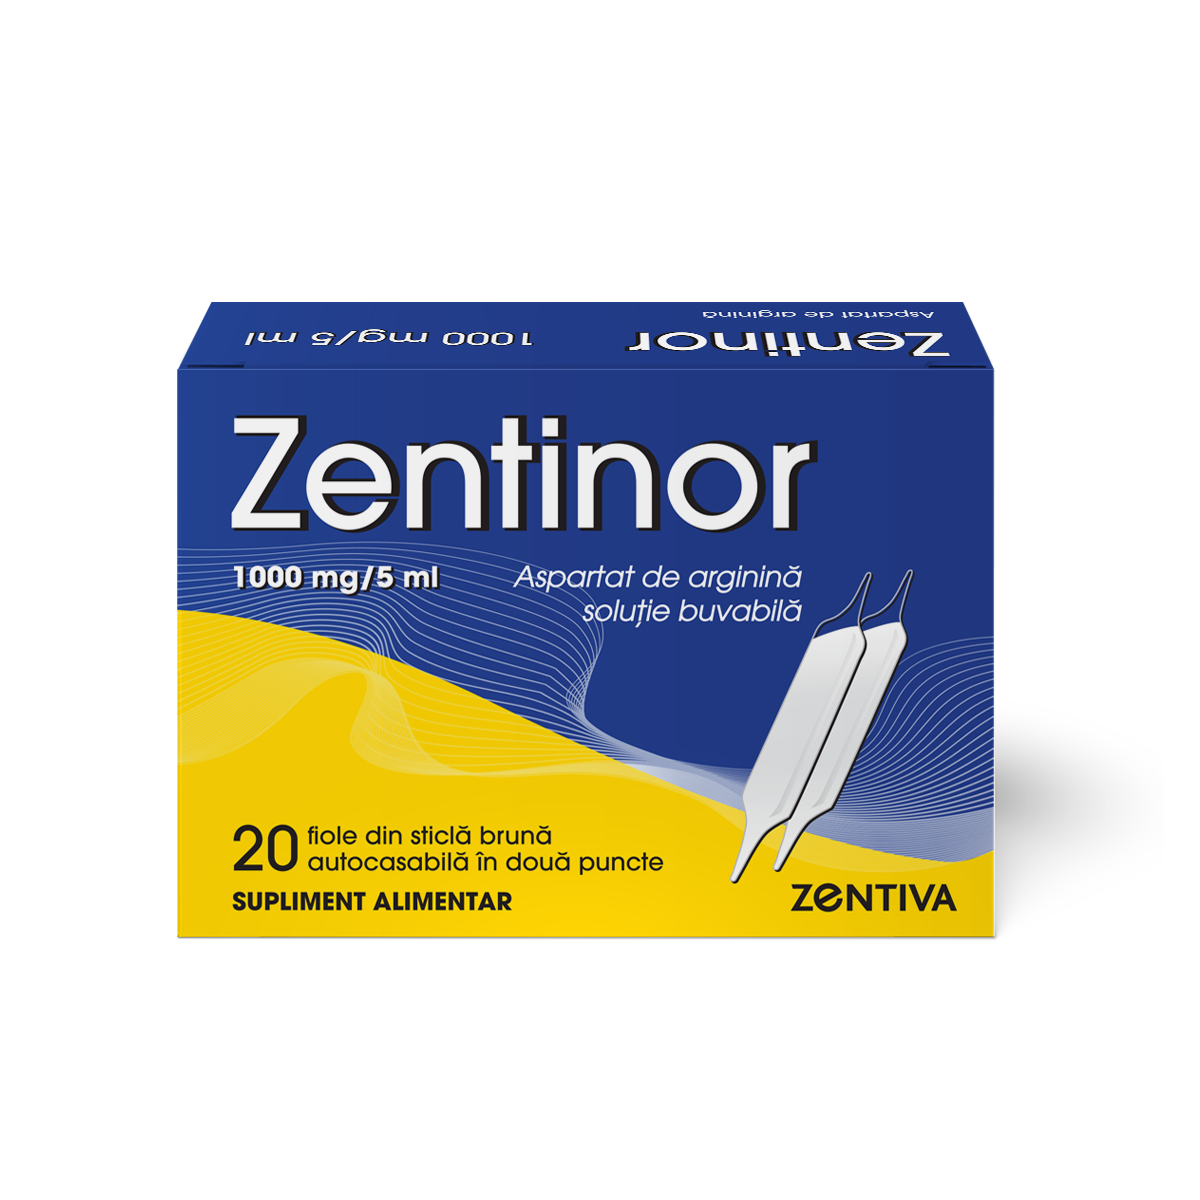 Zentinor, aspartat de arginina1000 mg/5ml, 20 fiole buvabile, Zentiva